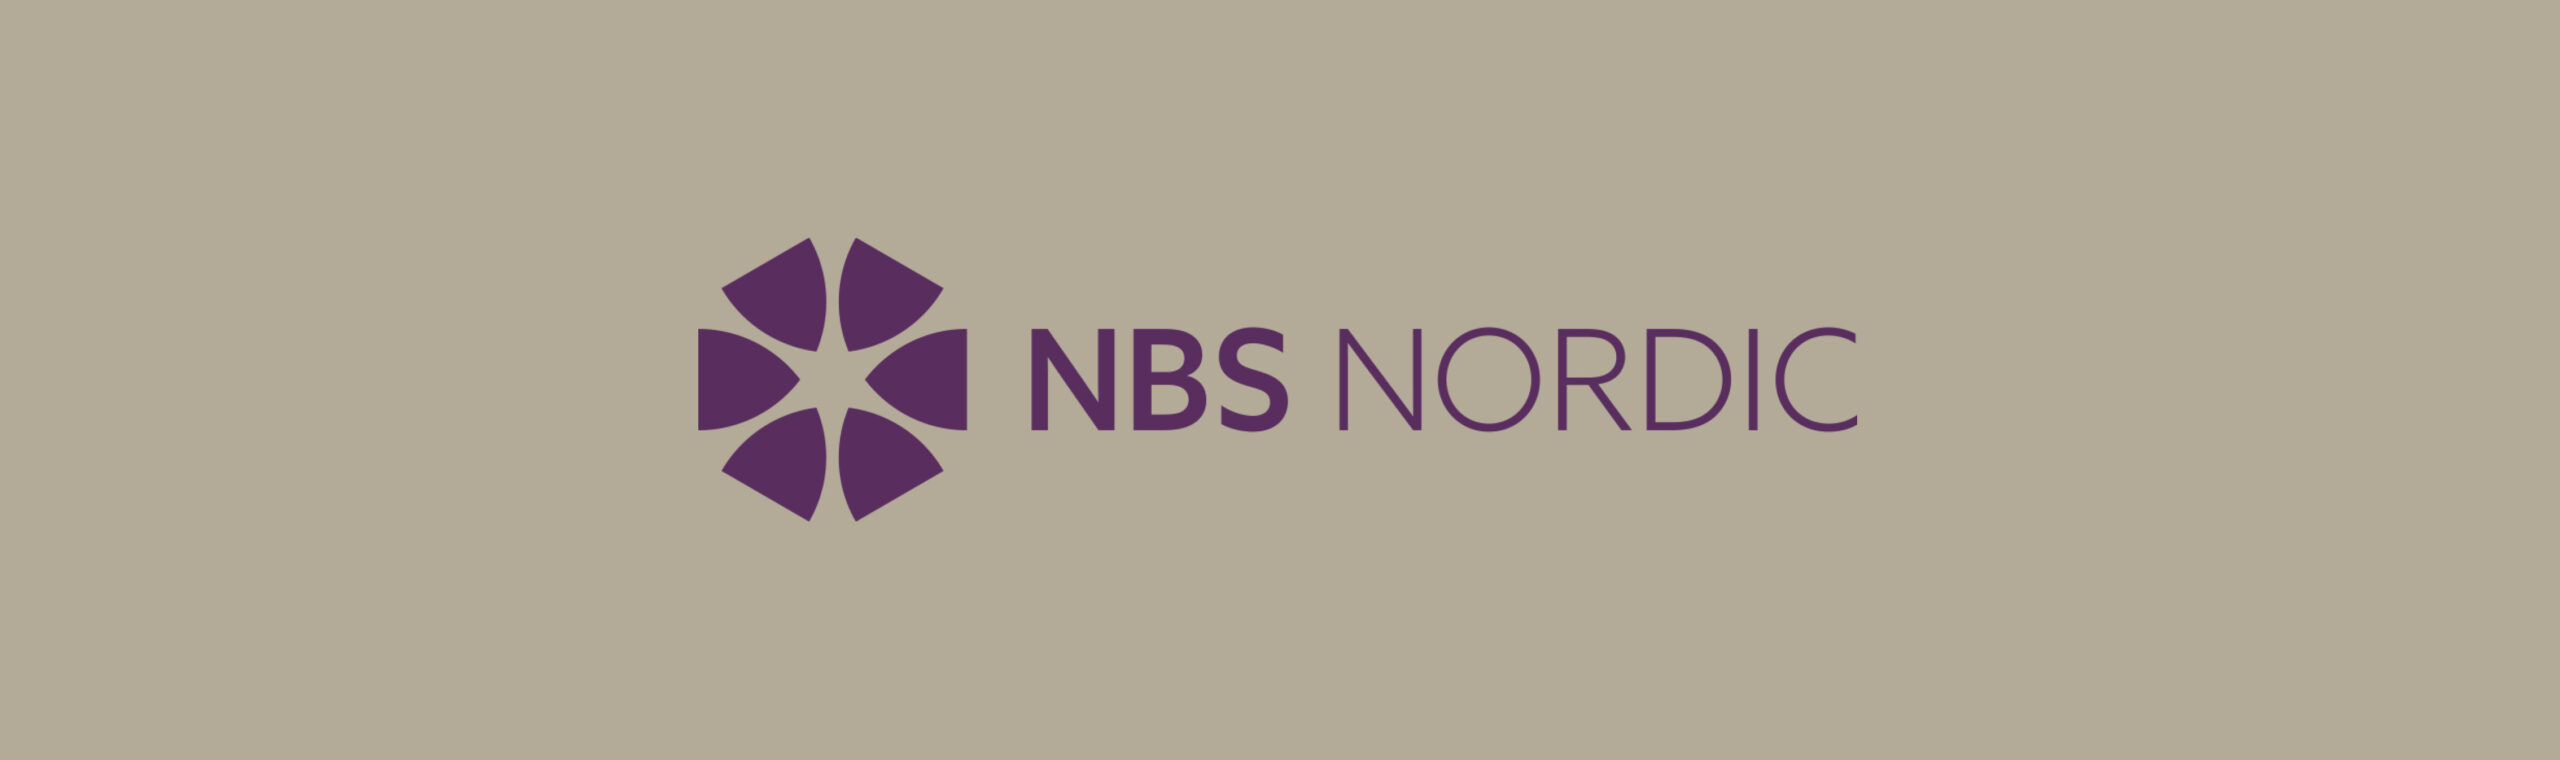 Hørning Parket ingår samarbete med NBS Nordic